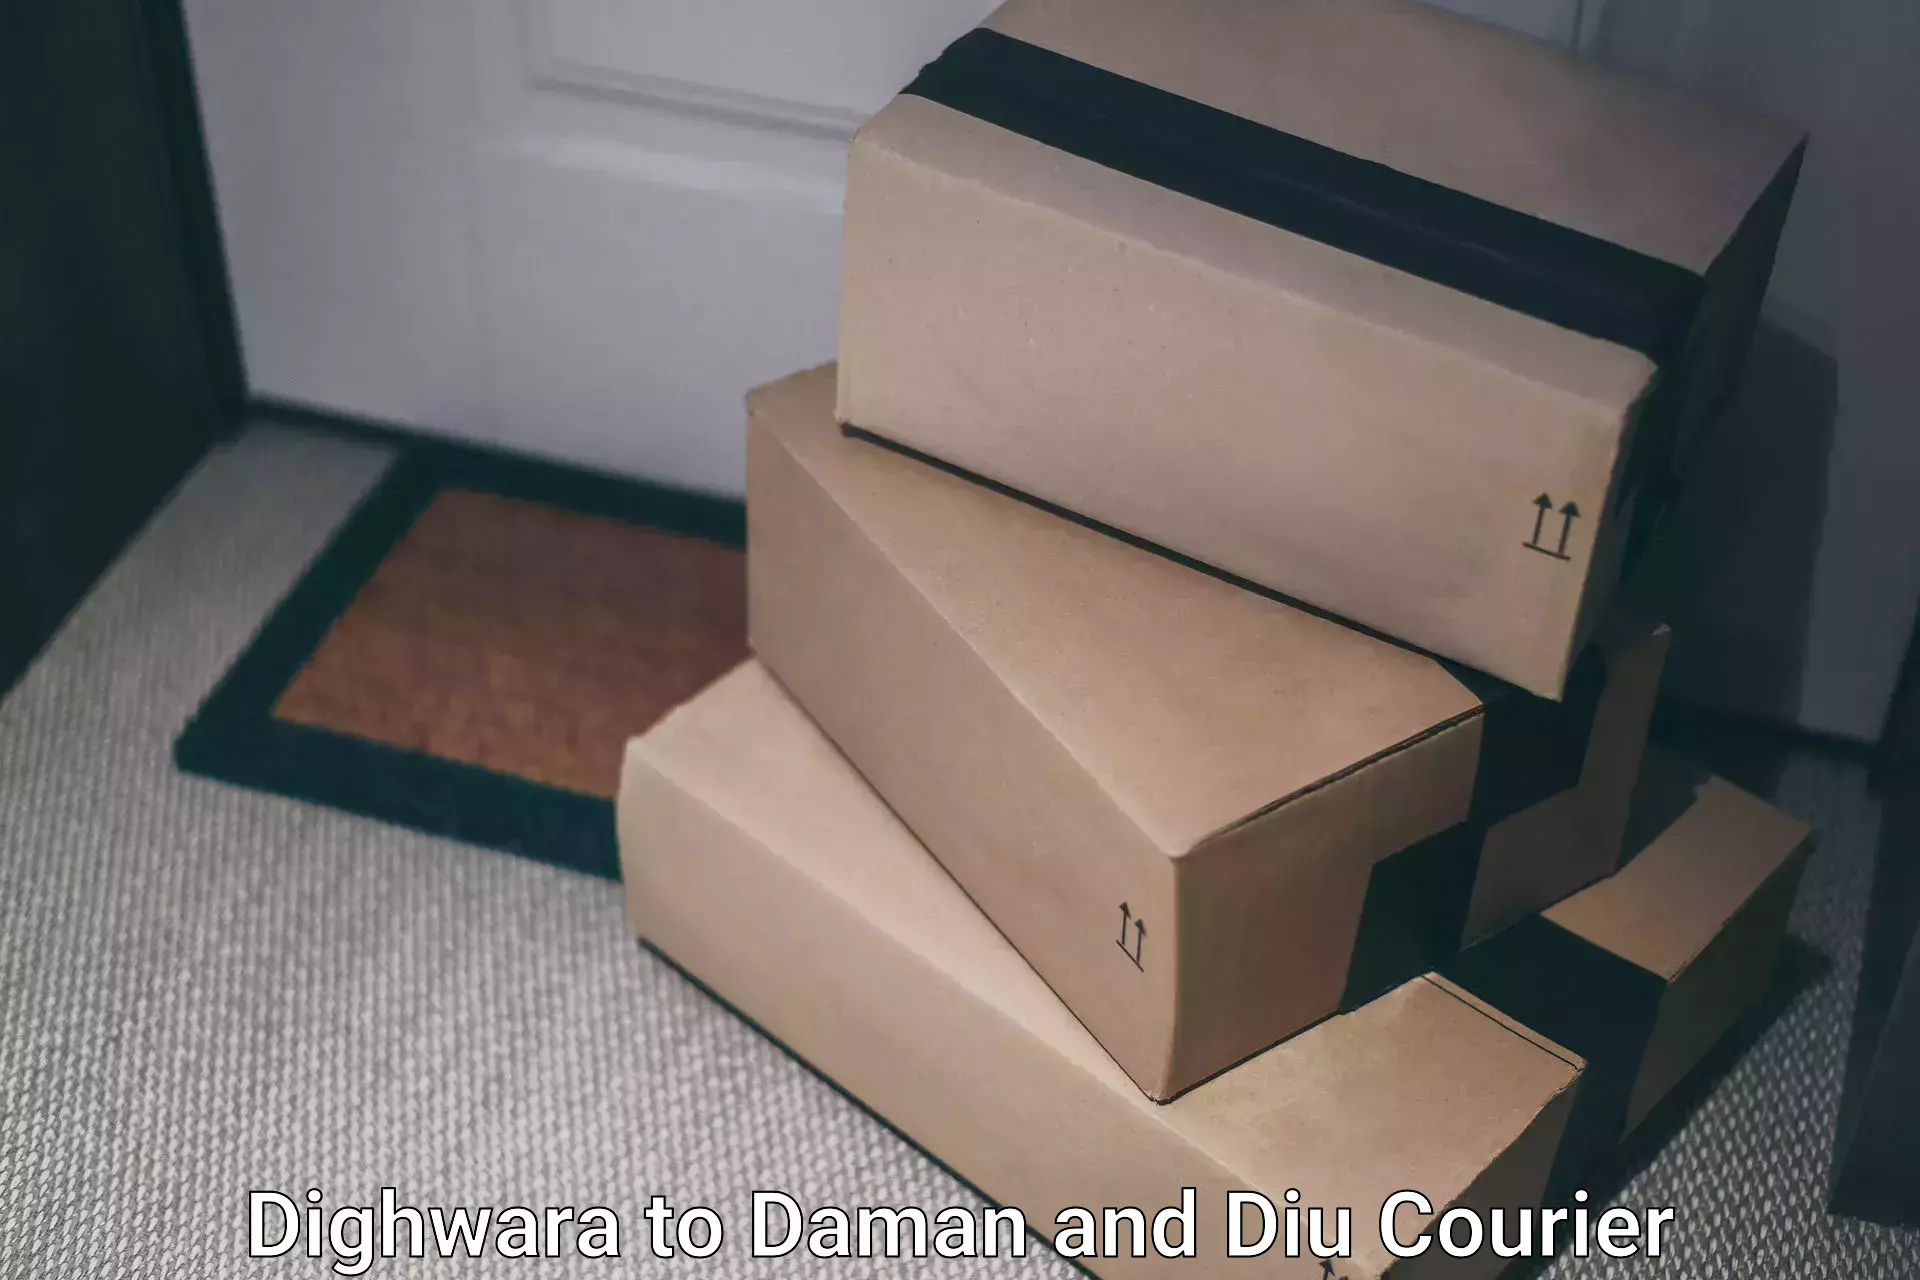 Efficient freight transportation Dighwara to Daman and Diu